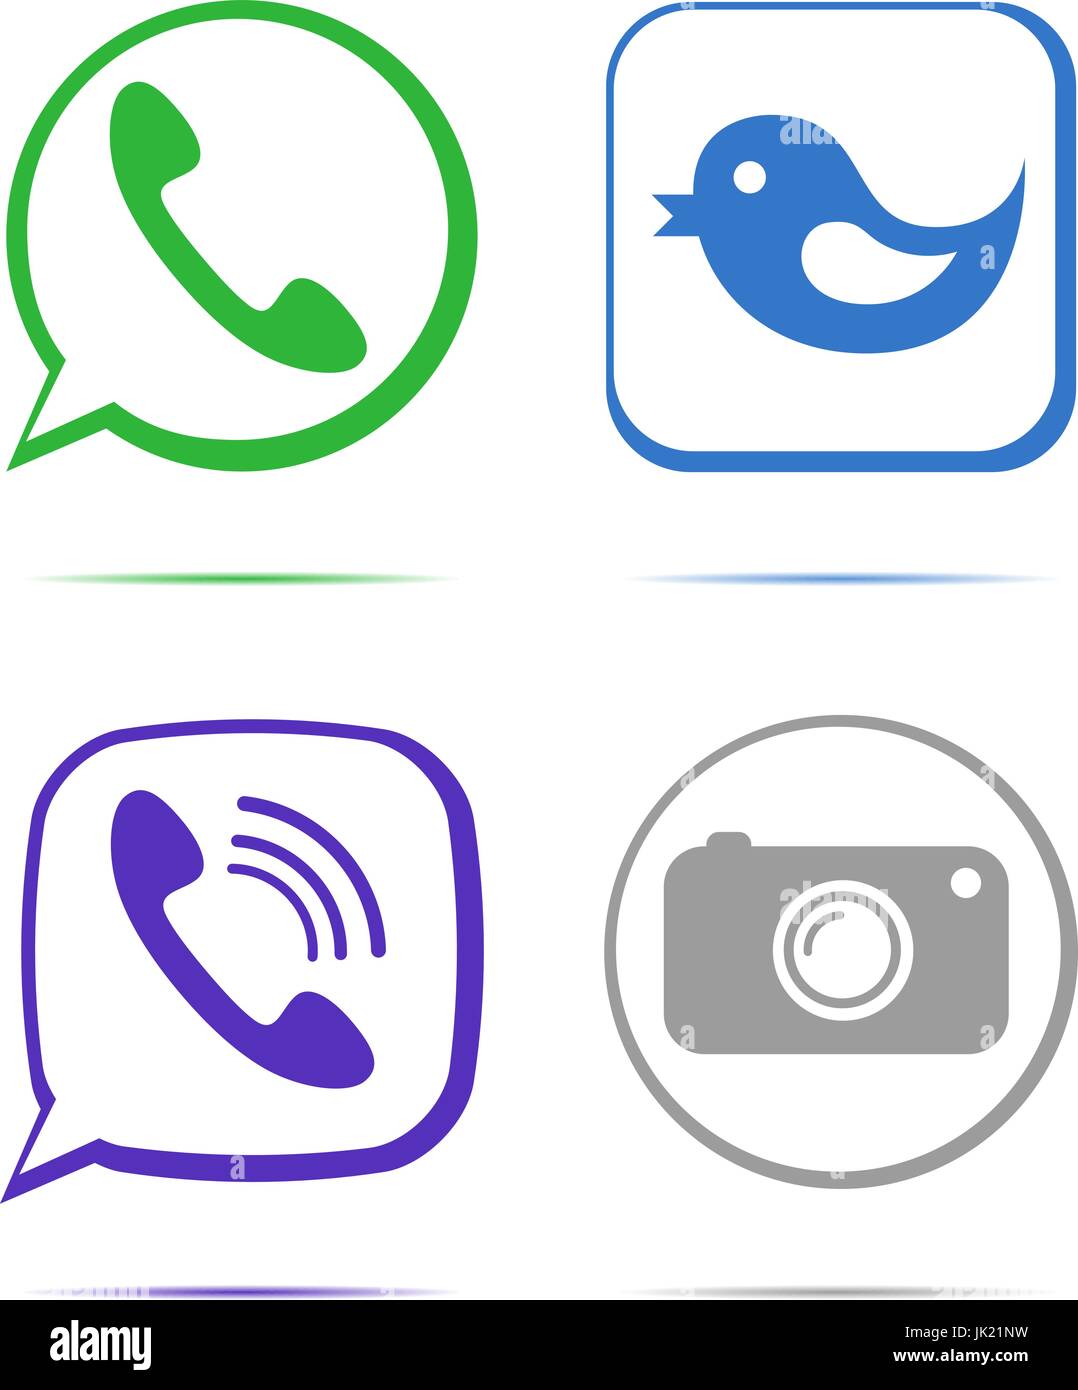 Télévision conçu vector icons de l'appareil photo numérique, comme symbole main, Thumbs up, Messenger et d'oiseaux combiné sur les médias sociaux, sites Web, interface Illustration de Vecteur